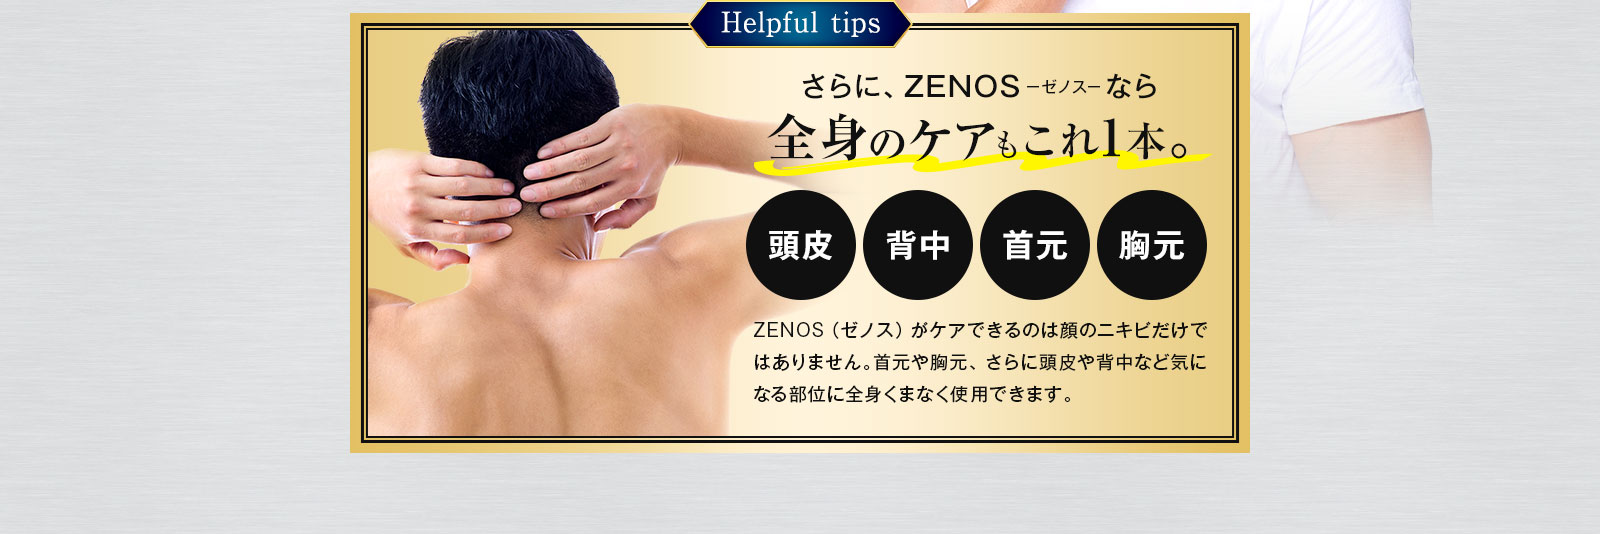 さらに、ZENOS-ゼノス-なら全身のケアもこれ1本。